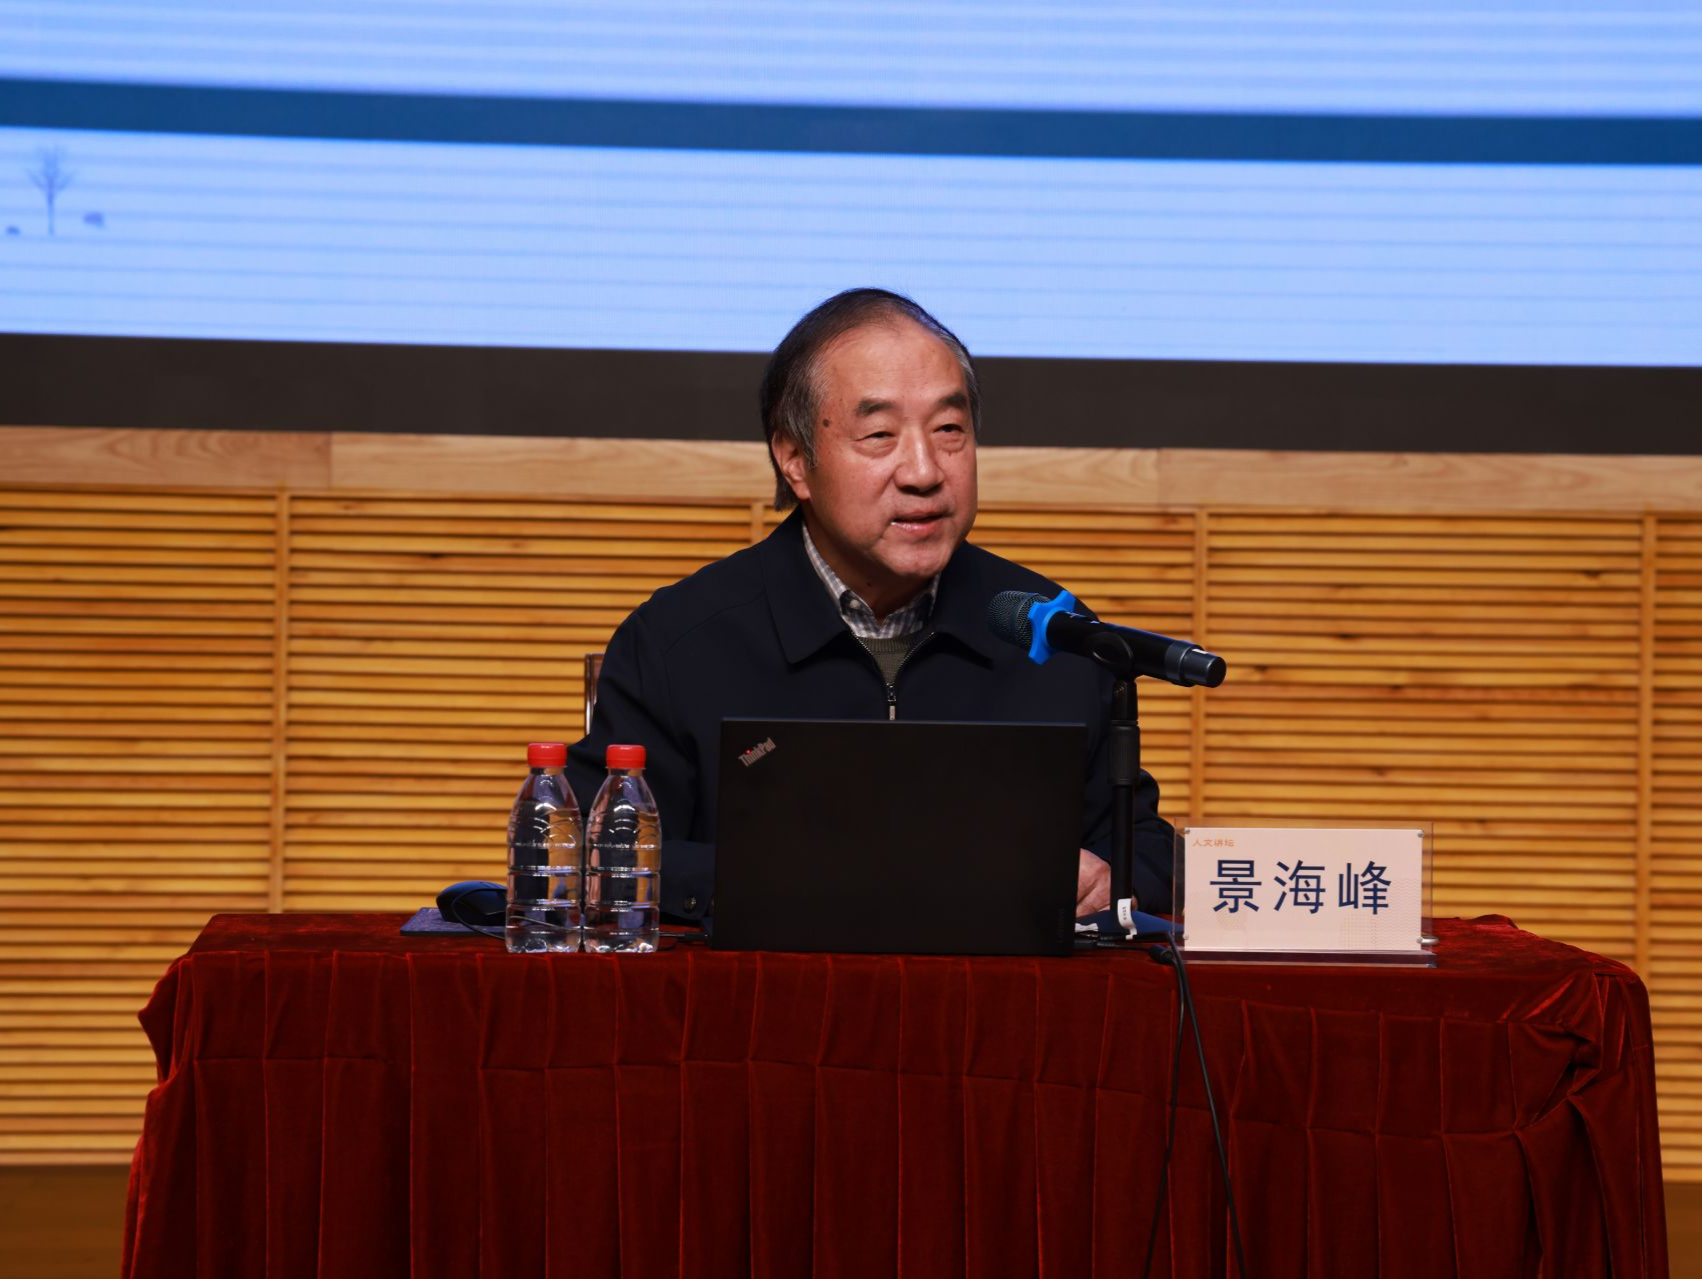 景海峰教授开讲《现代思潮中的儒学变迁》